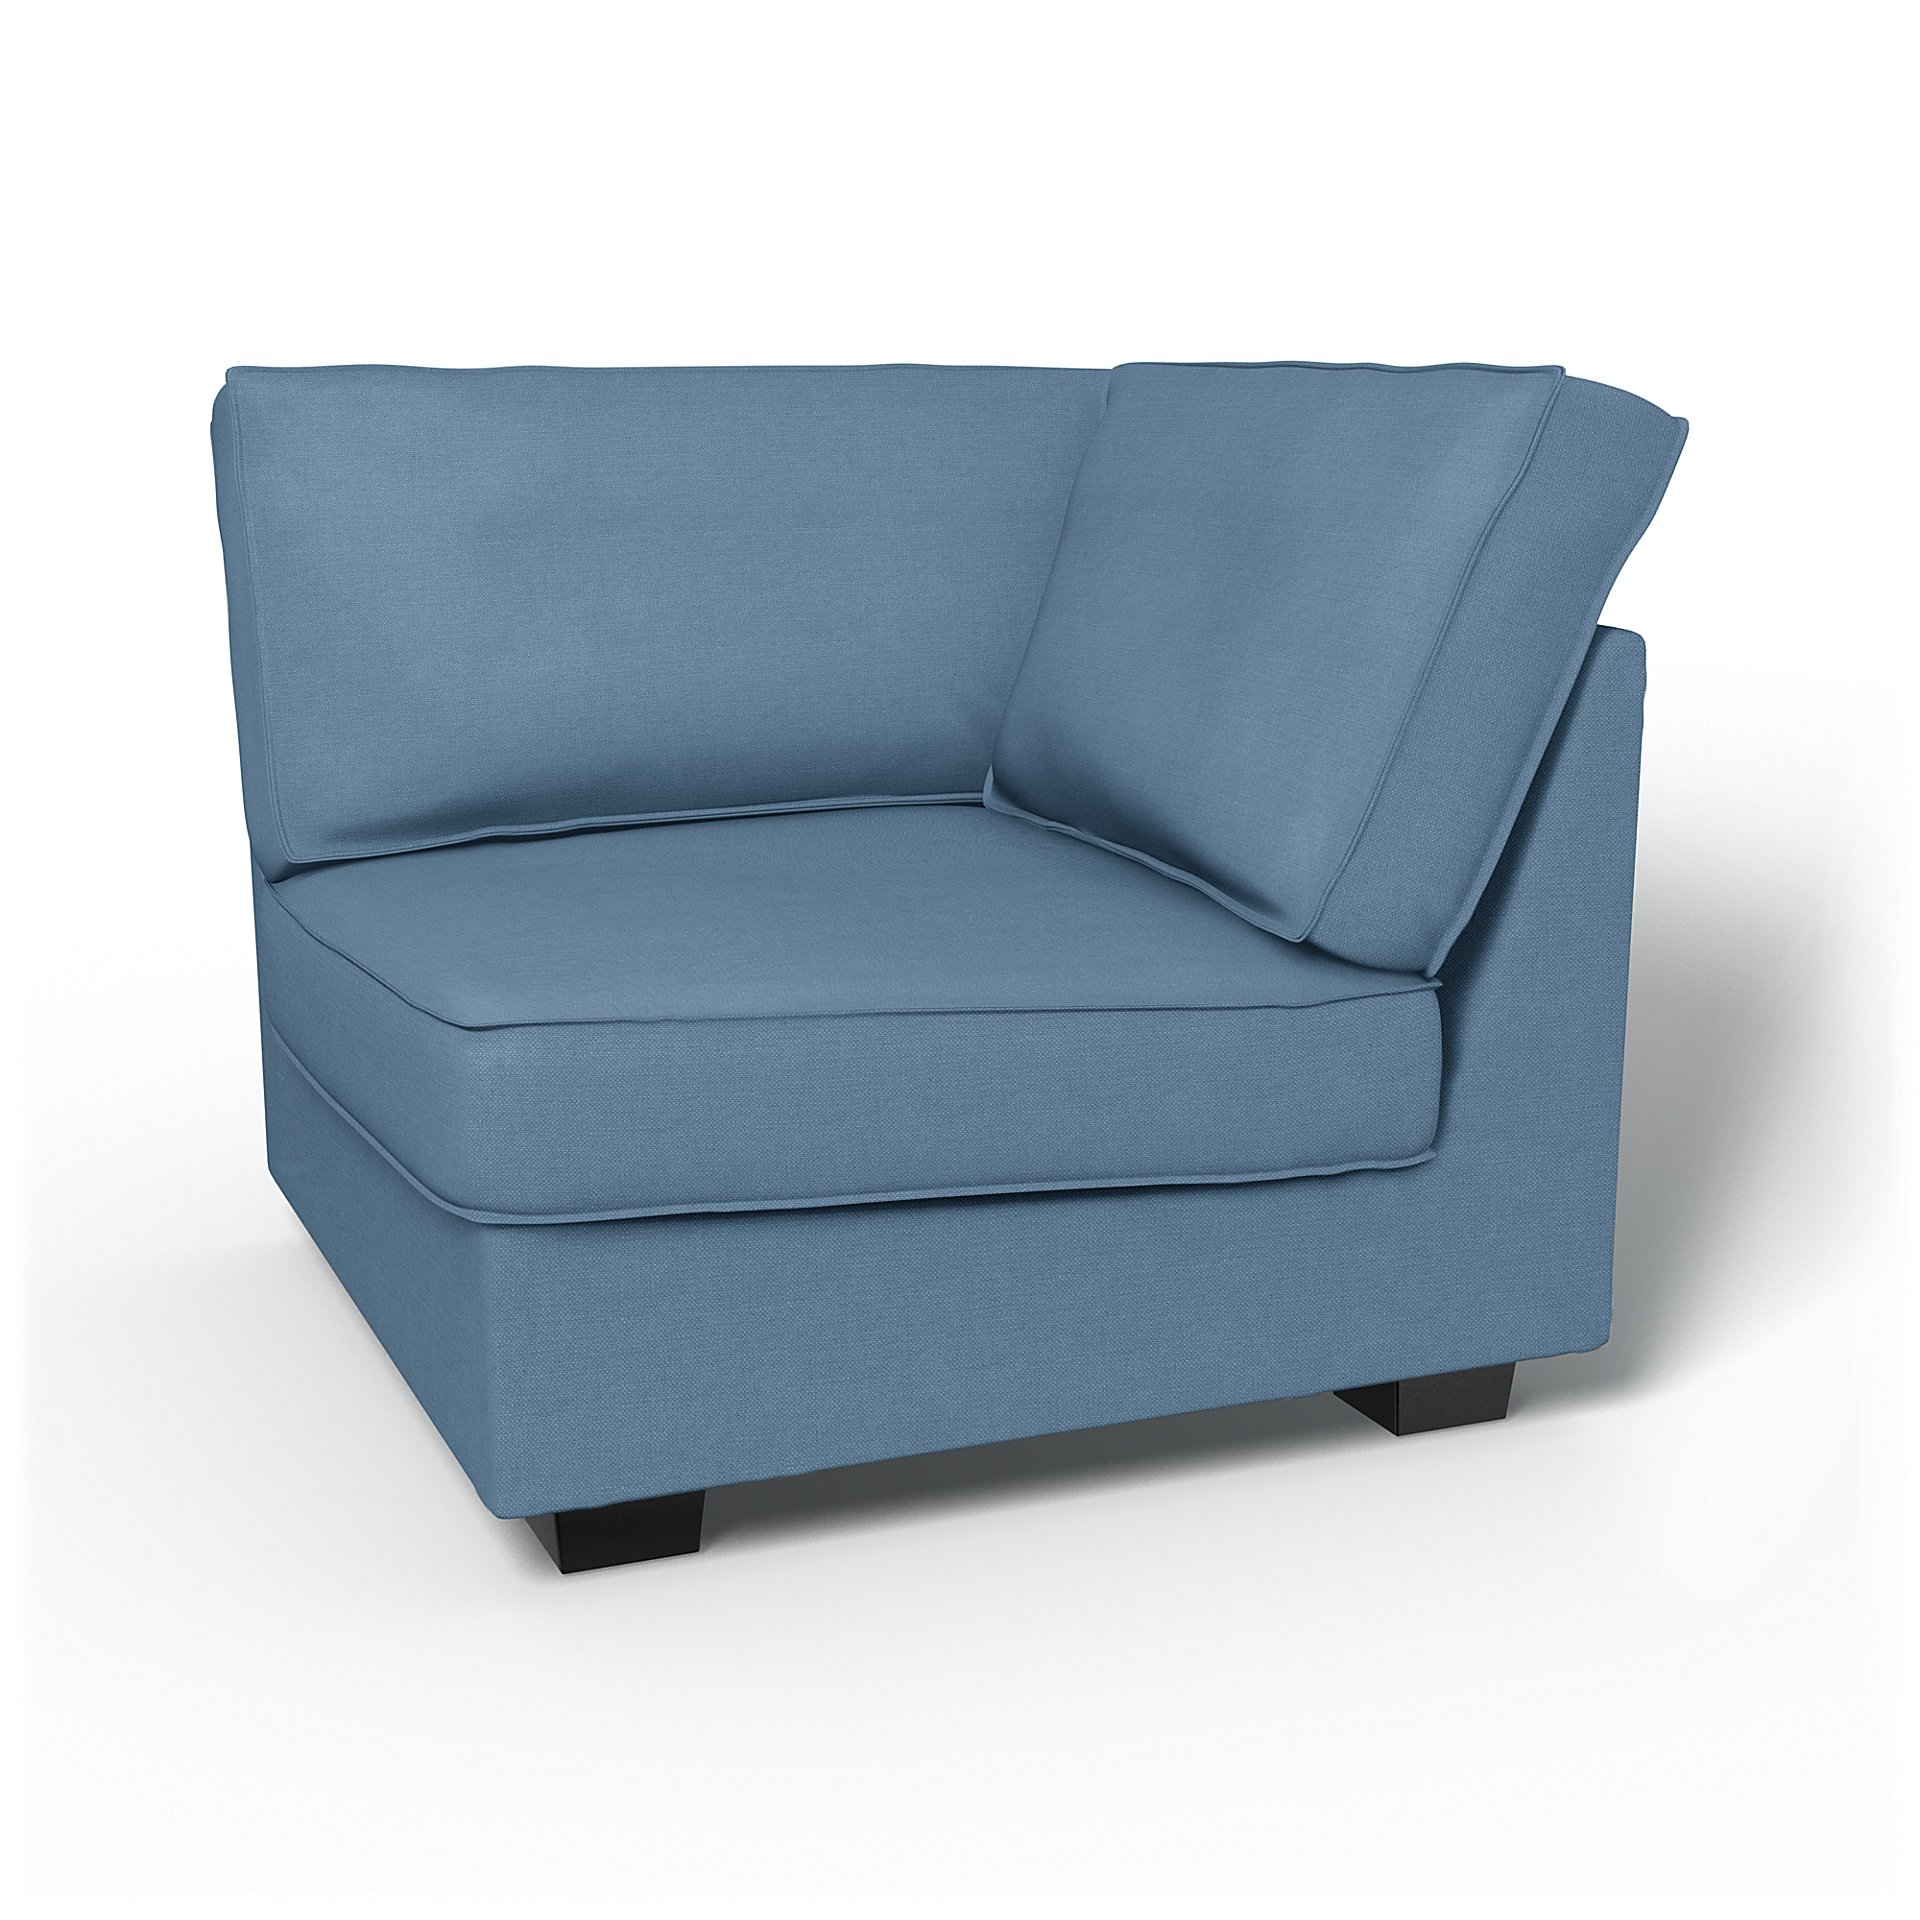 IKEA - Kivik Corner Module Add-on Unit Cover, Vintage Blue, Linen - Bemz